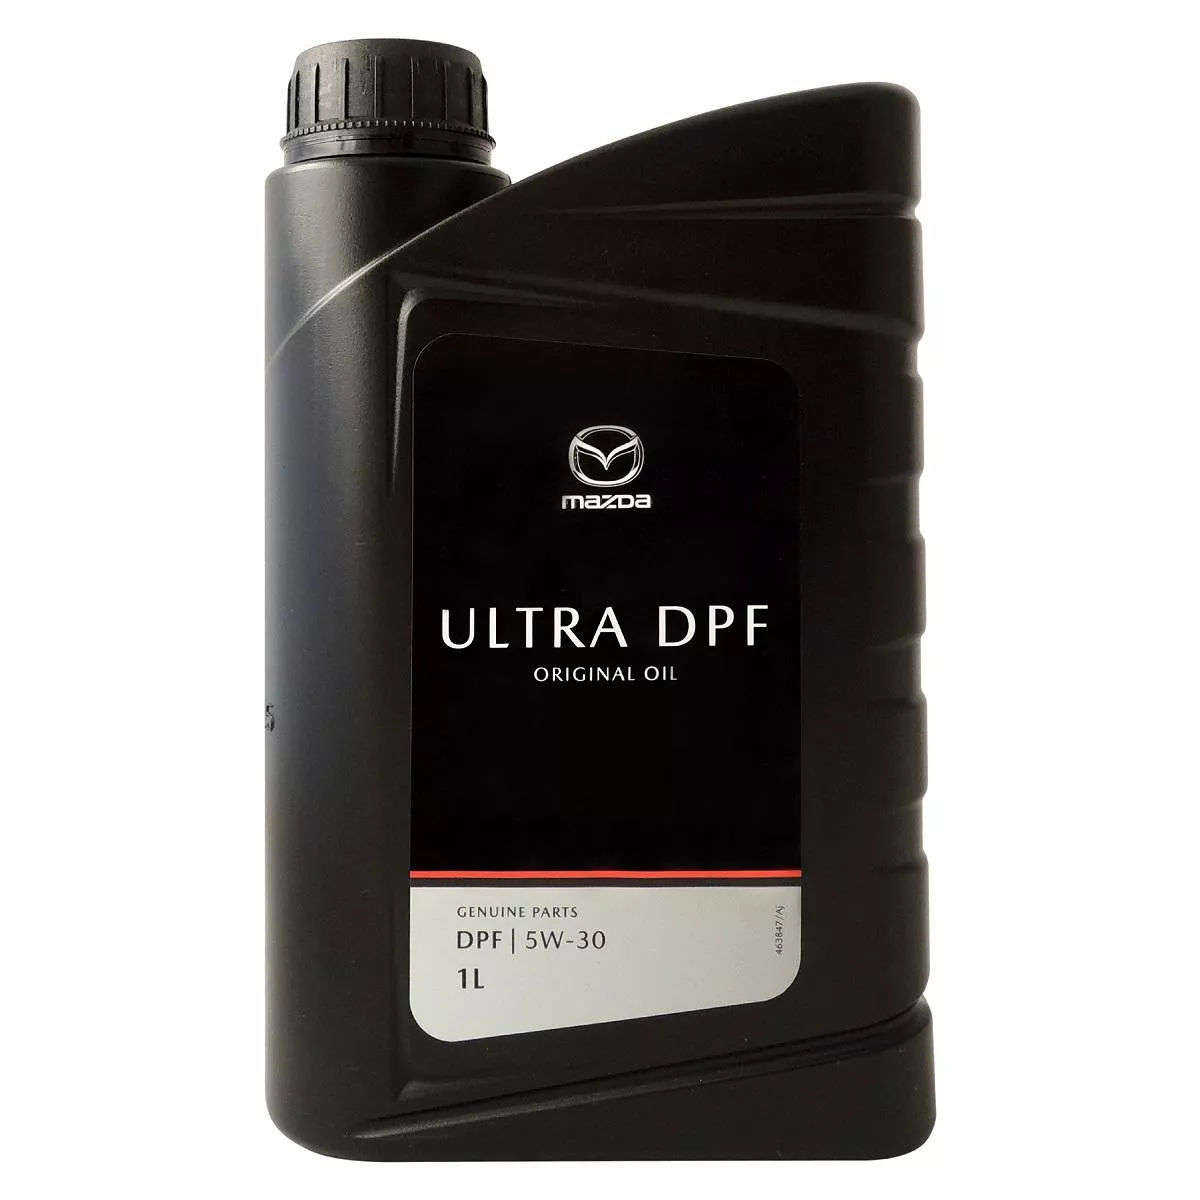 Mazda ULTRA DPF 5W30 柴油引擎機油 原廠機油